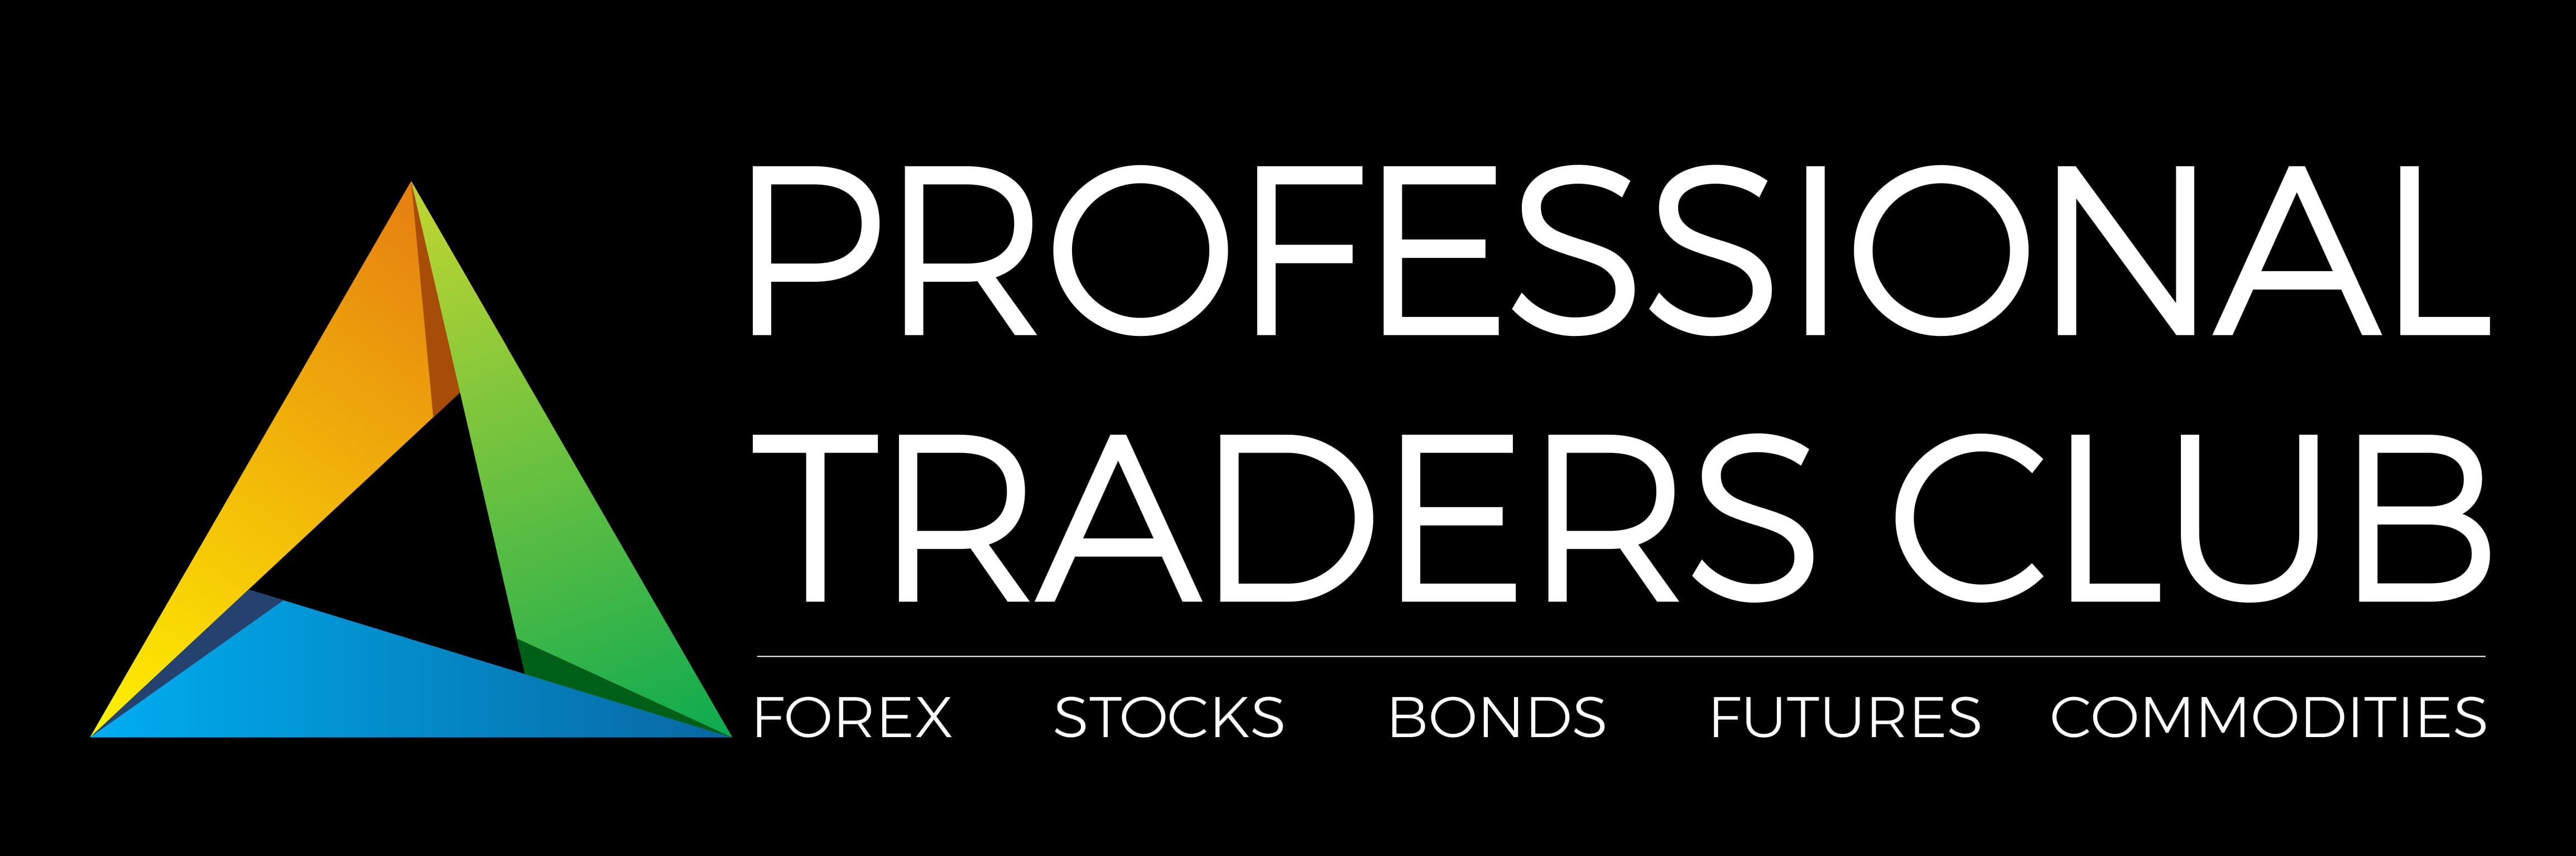 Shut Down - Professional Traders Club Logo